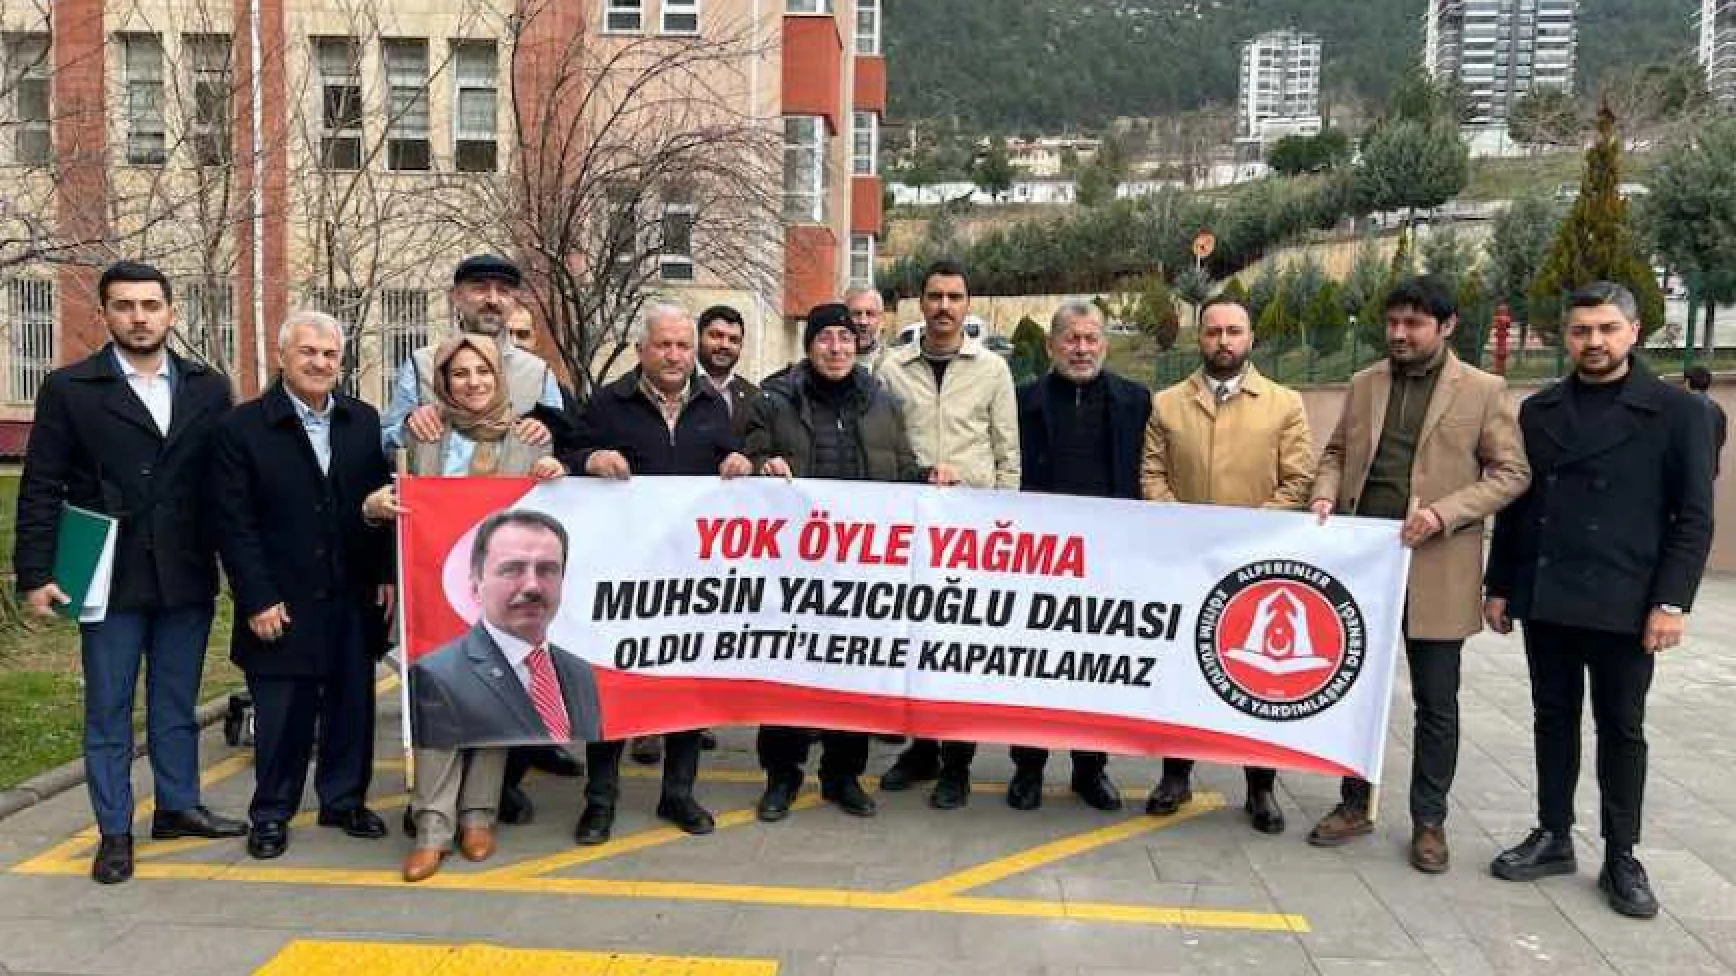 Muhsin Yazıcıoğlu'nun ölümüne ilişkin davaya devam edildi, Öznur: Gün gelecek hesap vereceksiniz